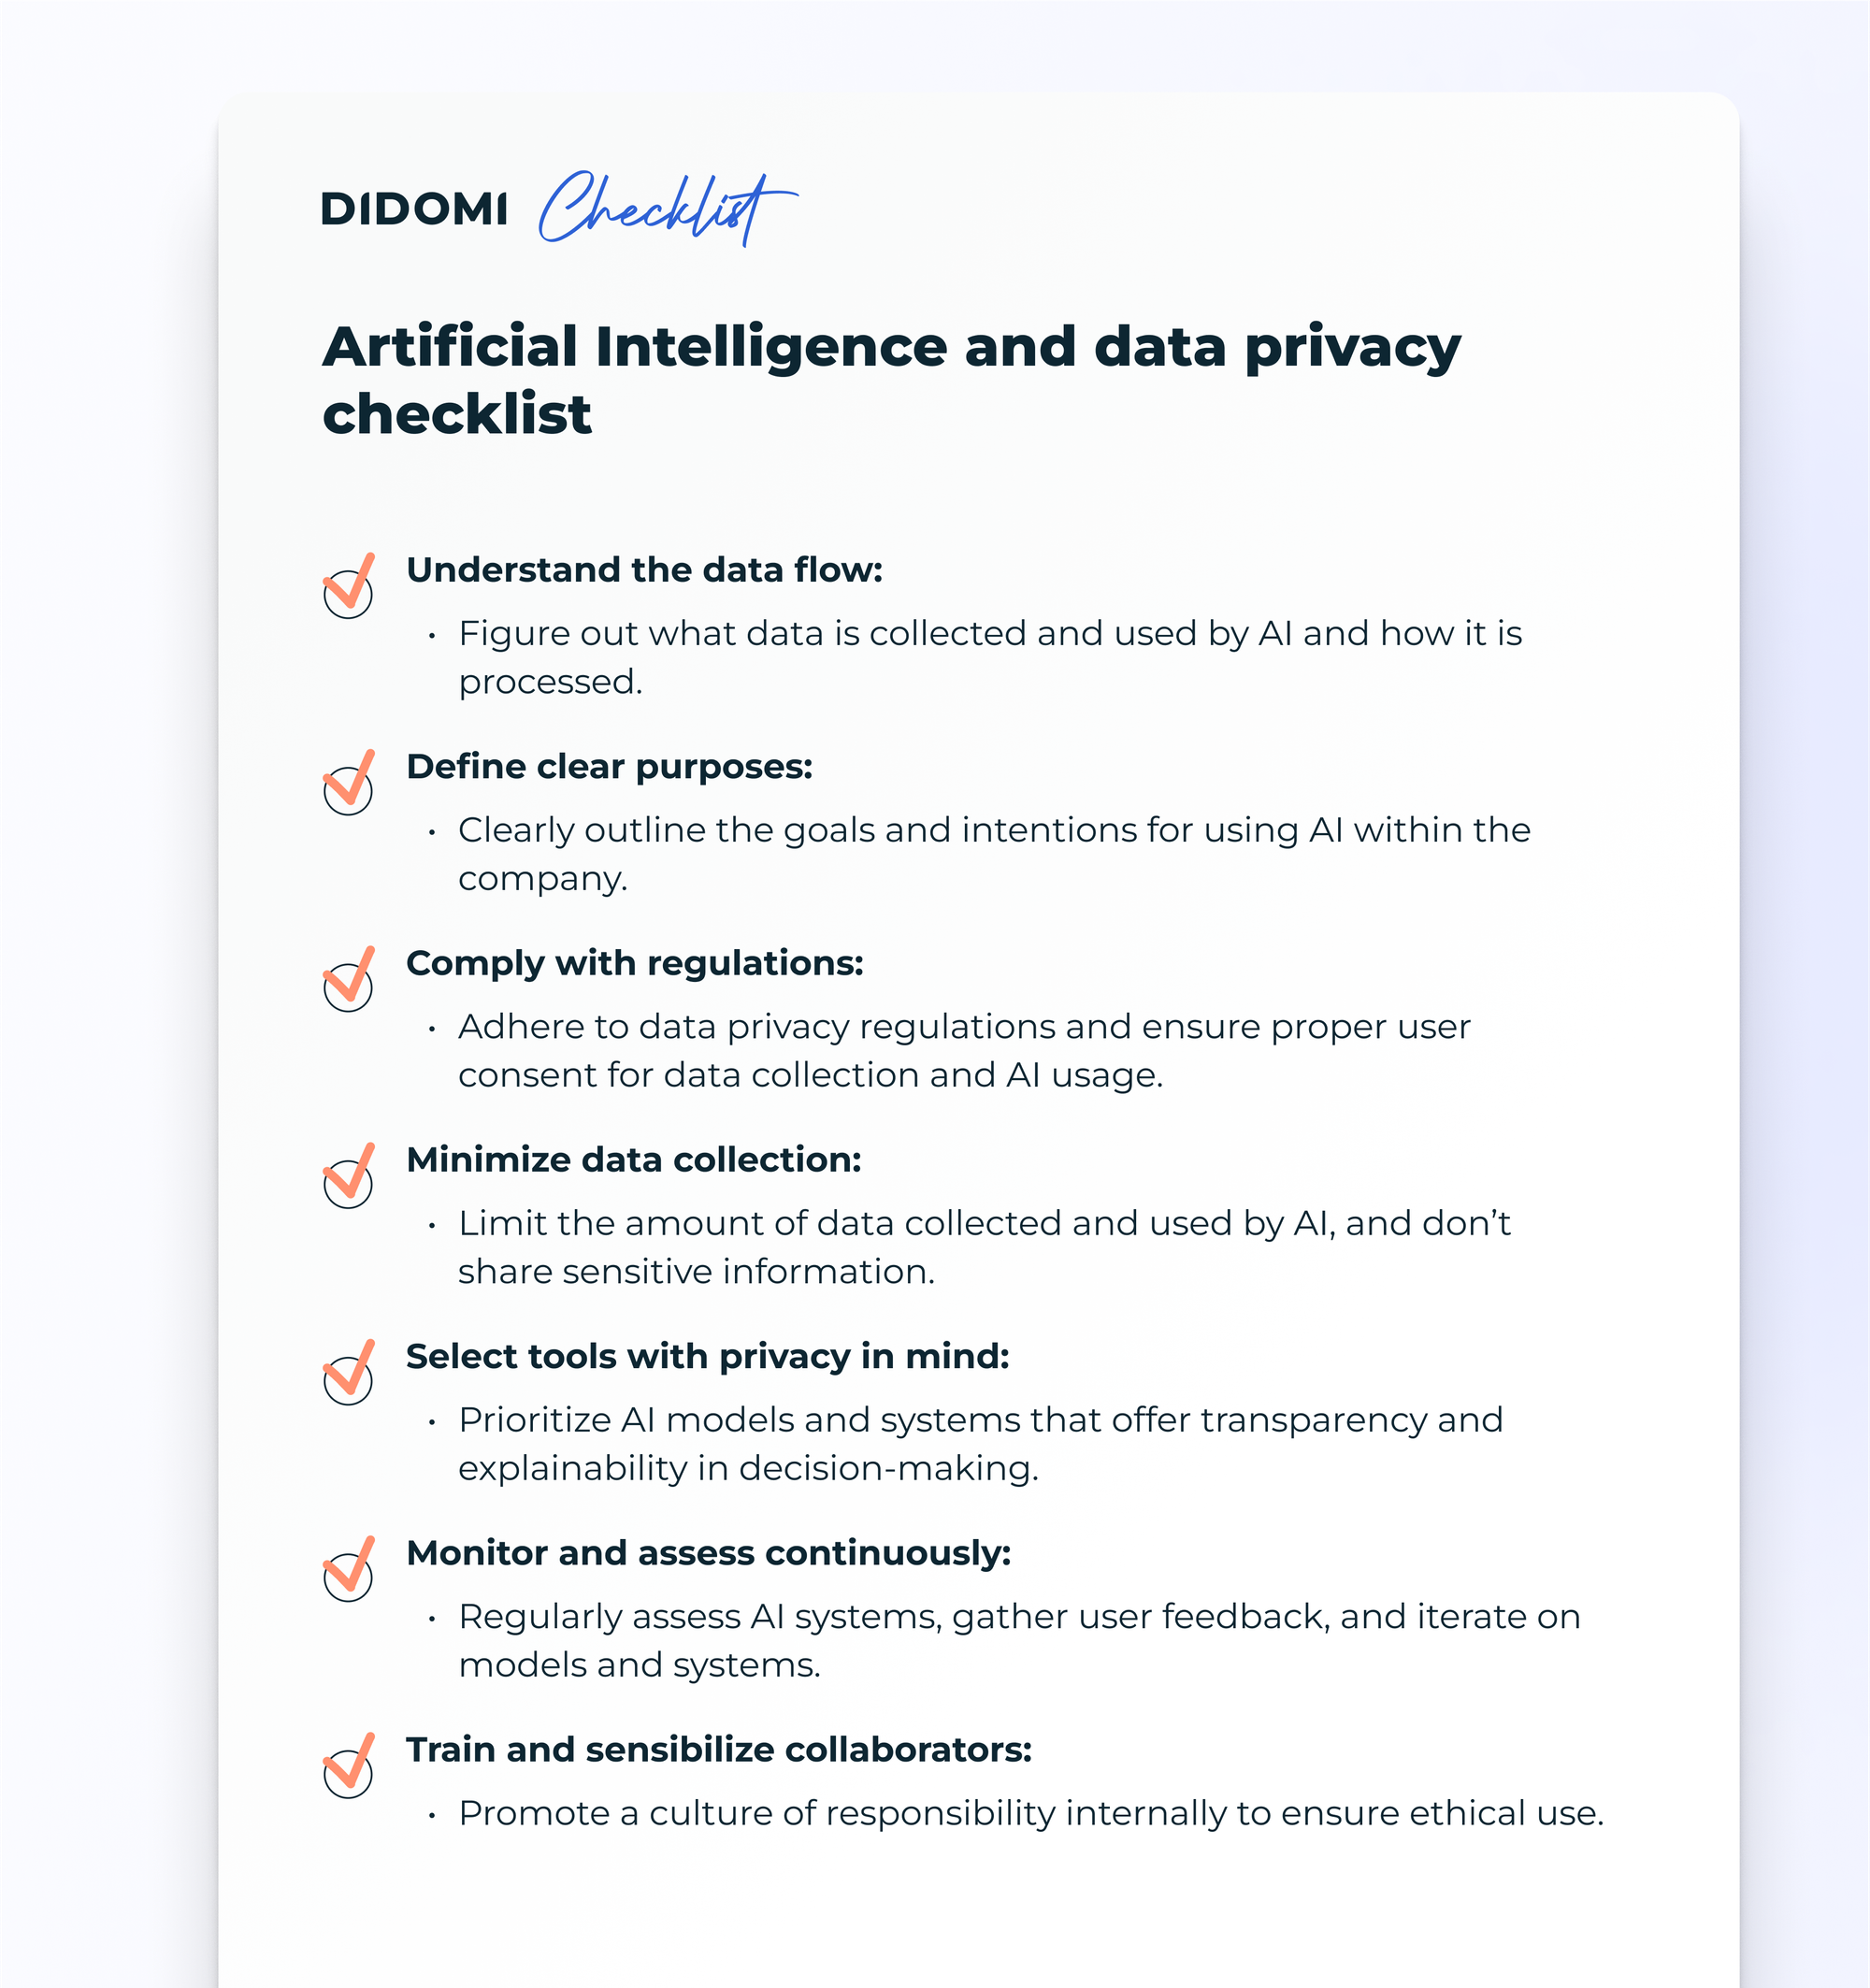 Didomi - AI and data privacy checklist